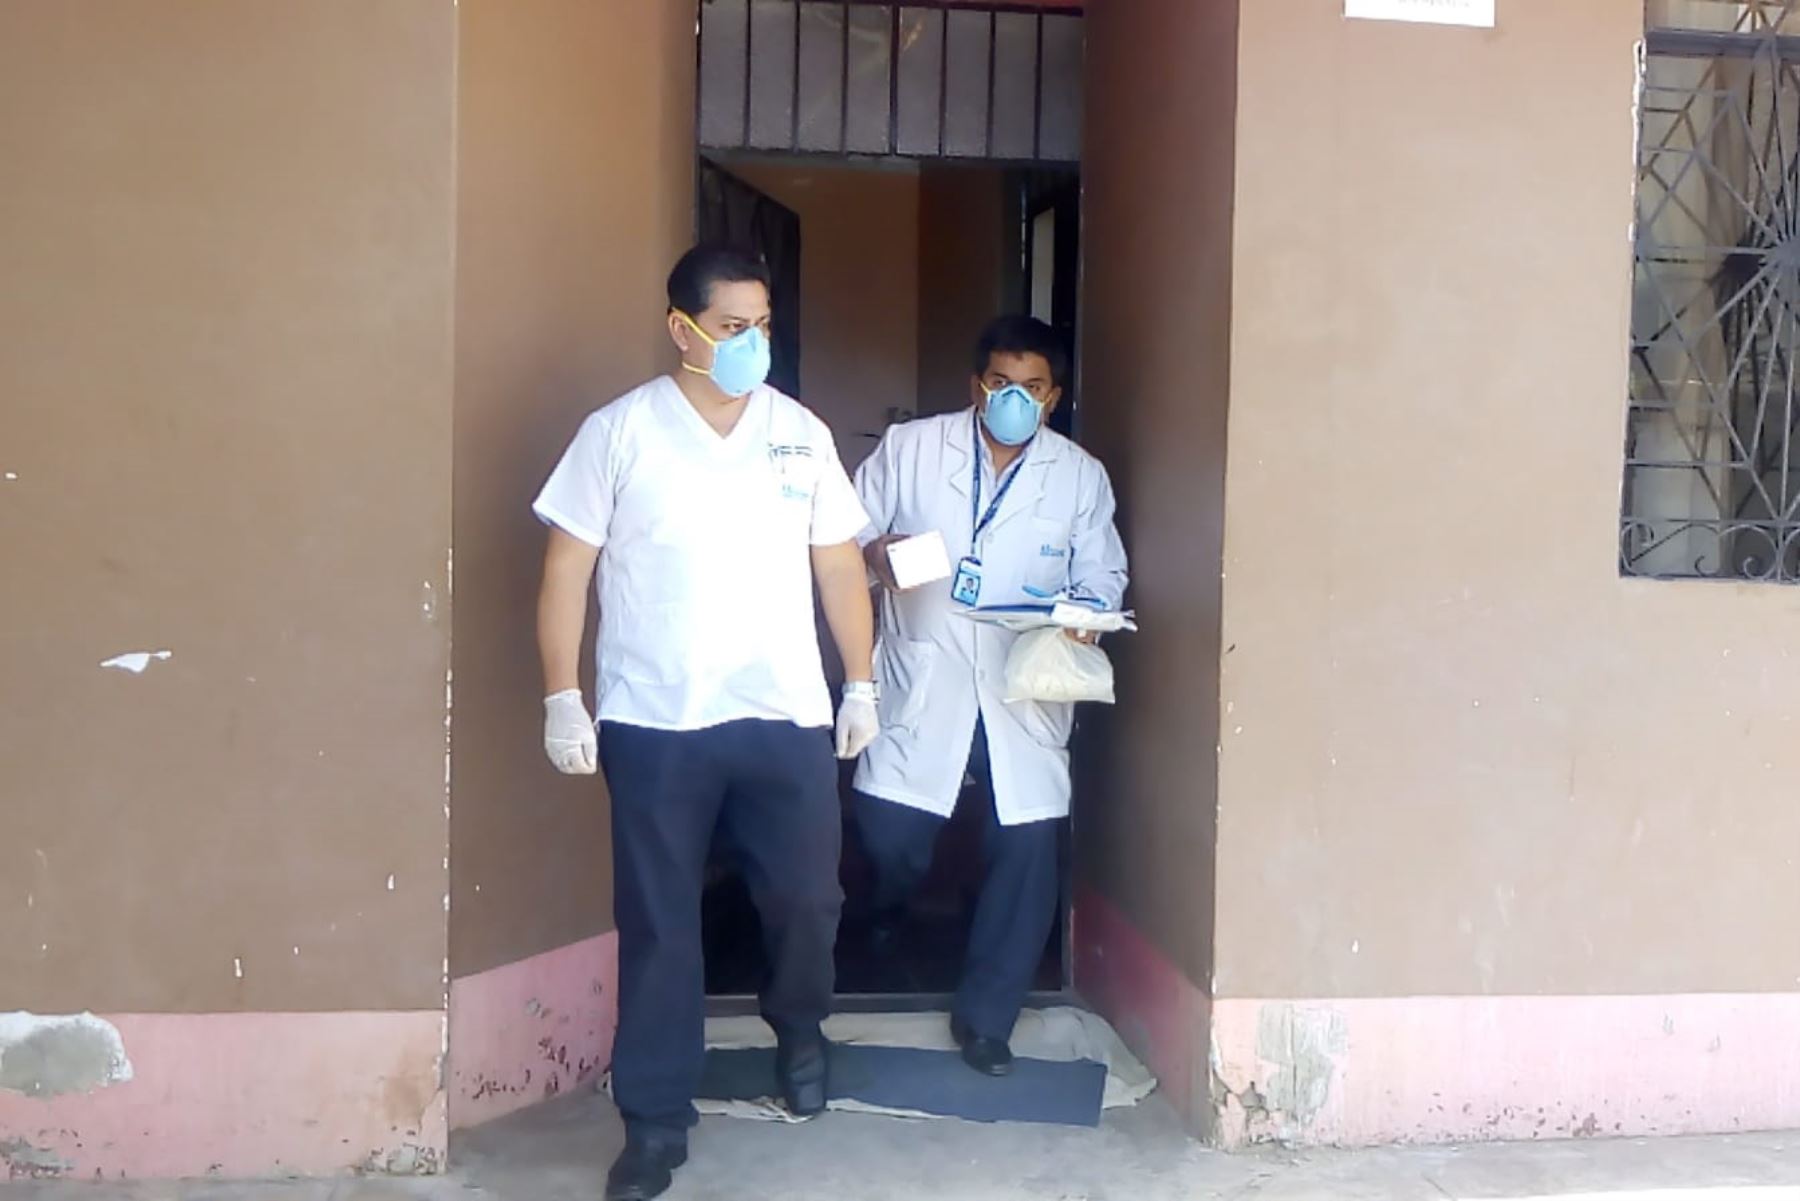 Dos médicos de EsSalud Lambayeque llegaron hasta la vivienda de asegurado en Chiclayo para tomar la prueba de hisopado.